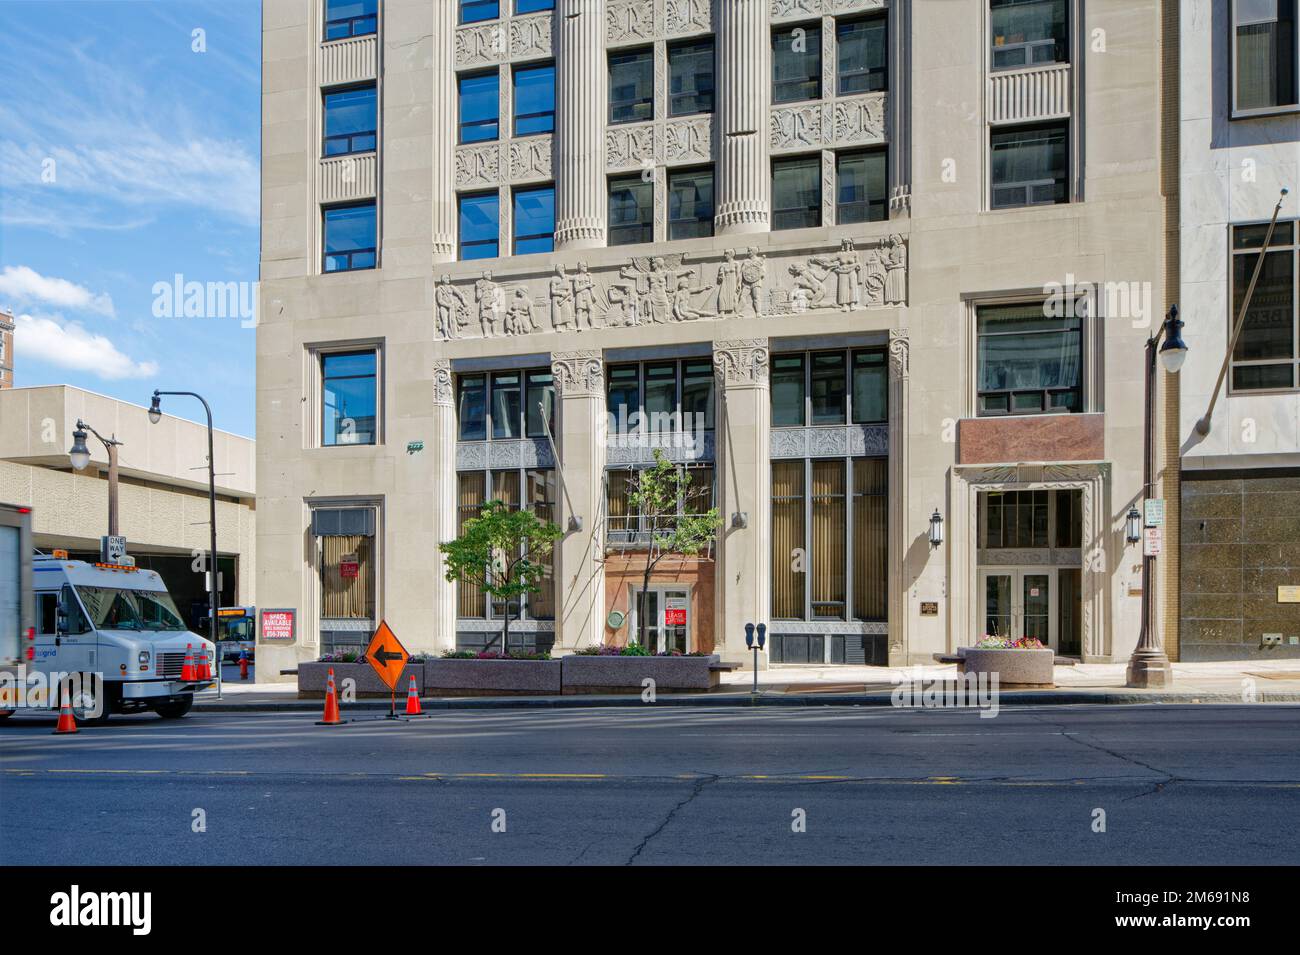 Buffalo Industrial Bank, auch bekannt als Court Street Office Building 17, ist ein mittelhohes Gebäude im Art déco-Stil mit Kalkstein, das 1929 von Bley & Lyman entworfen wurde. Stockfoto